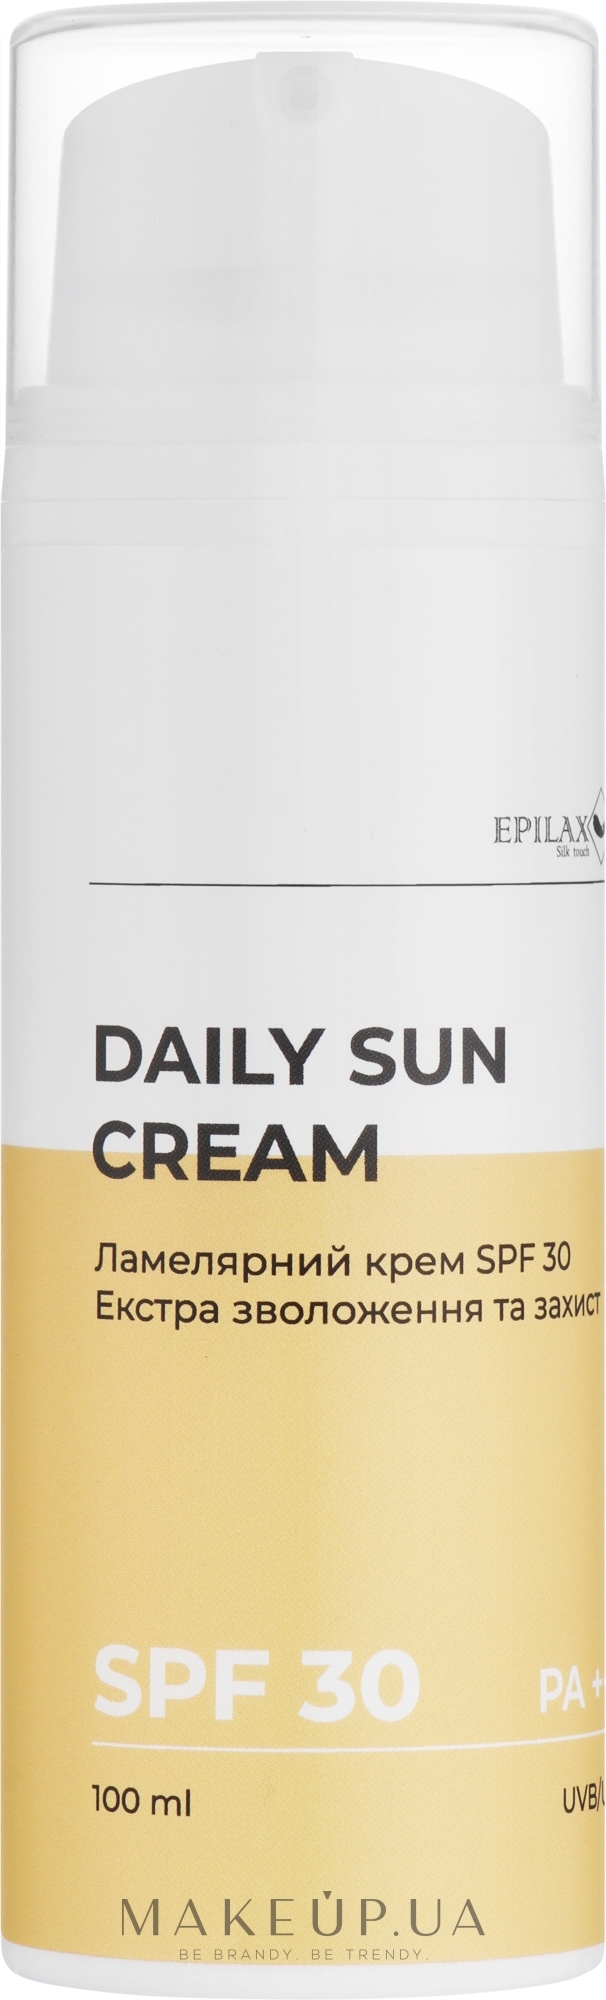 Ламелярний крем SPF 30 екстра зволоження та захист - Epilax Silk Touch Daily Sun Cream SPF 30 — фото 100ml